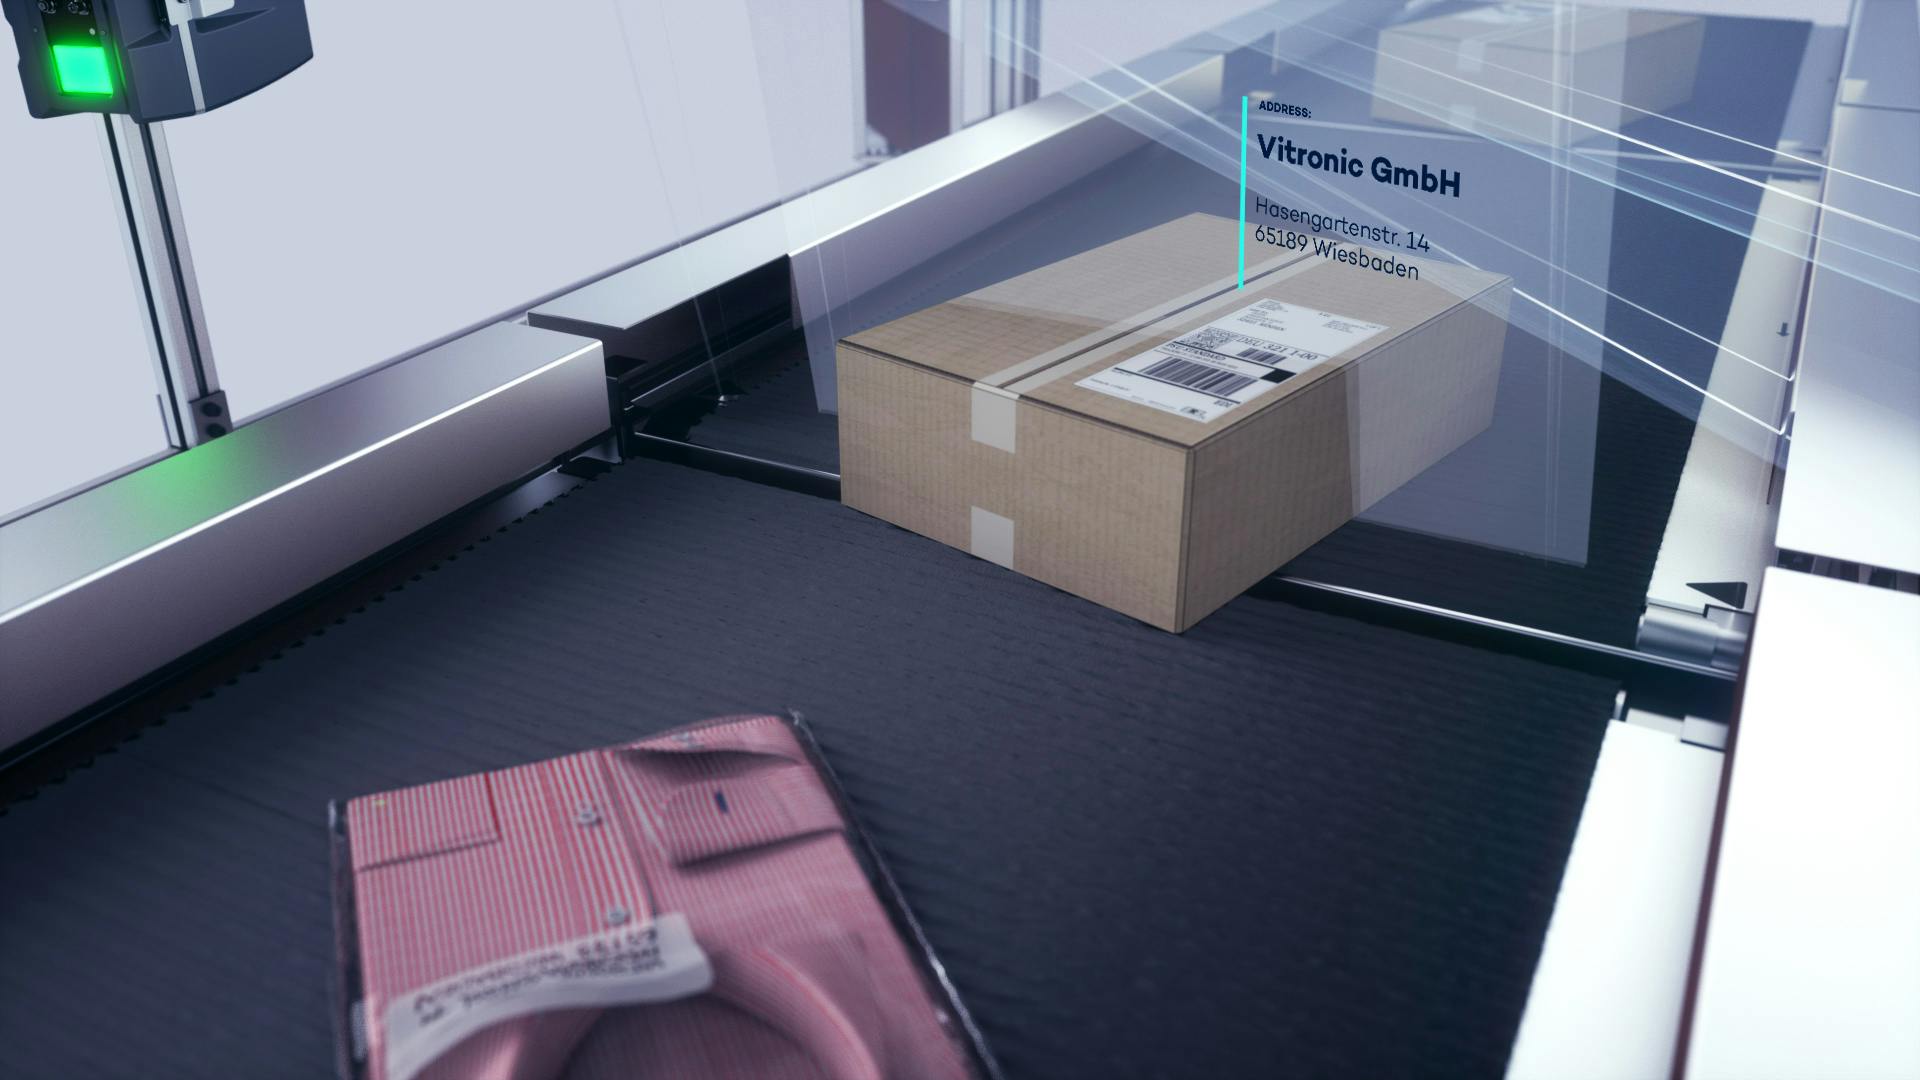 Una camisa y un paquete en la cinta transportadora durante el registro de devoluciones.